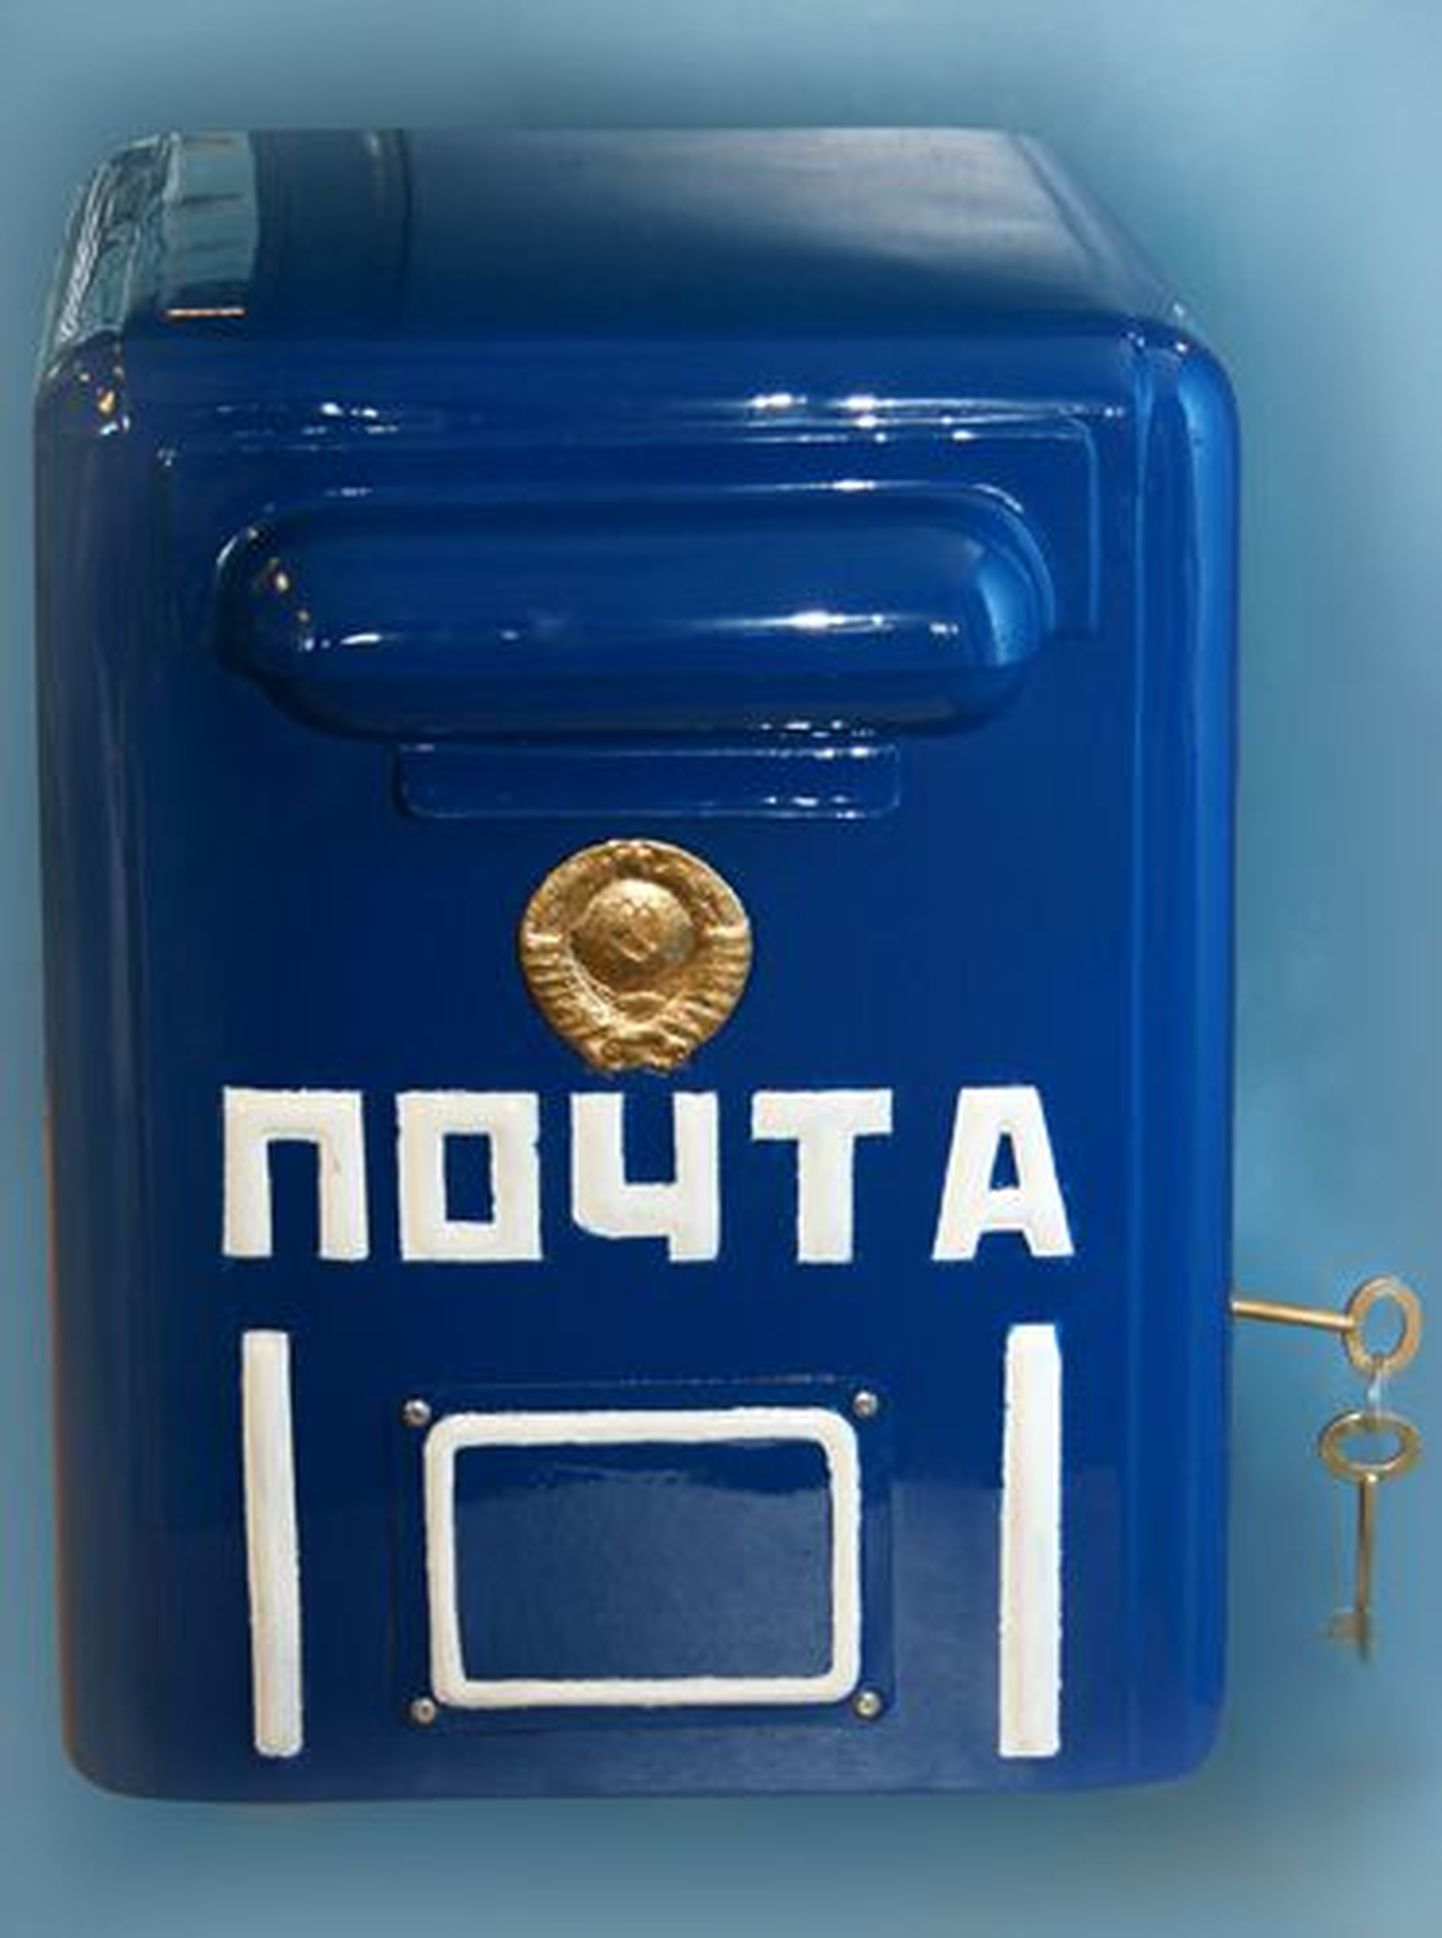 Oтреставрированный почтовый ящик в советском стиле передали ресторану Troika.